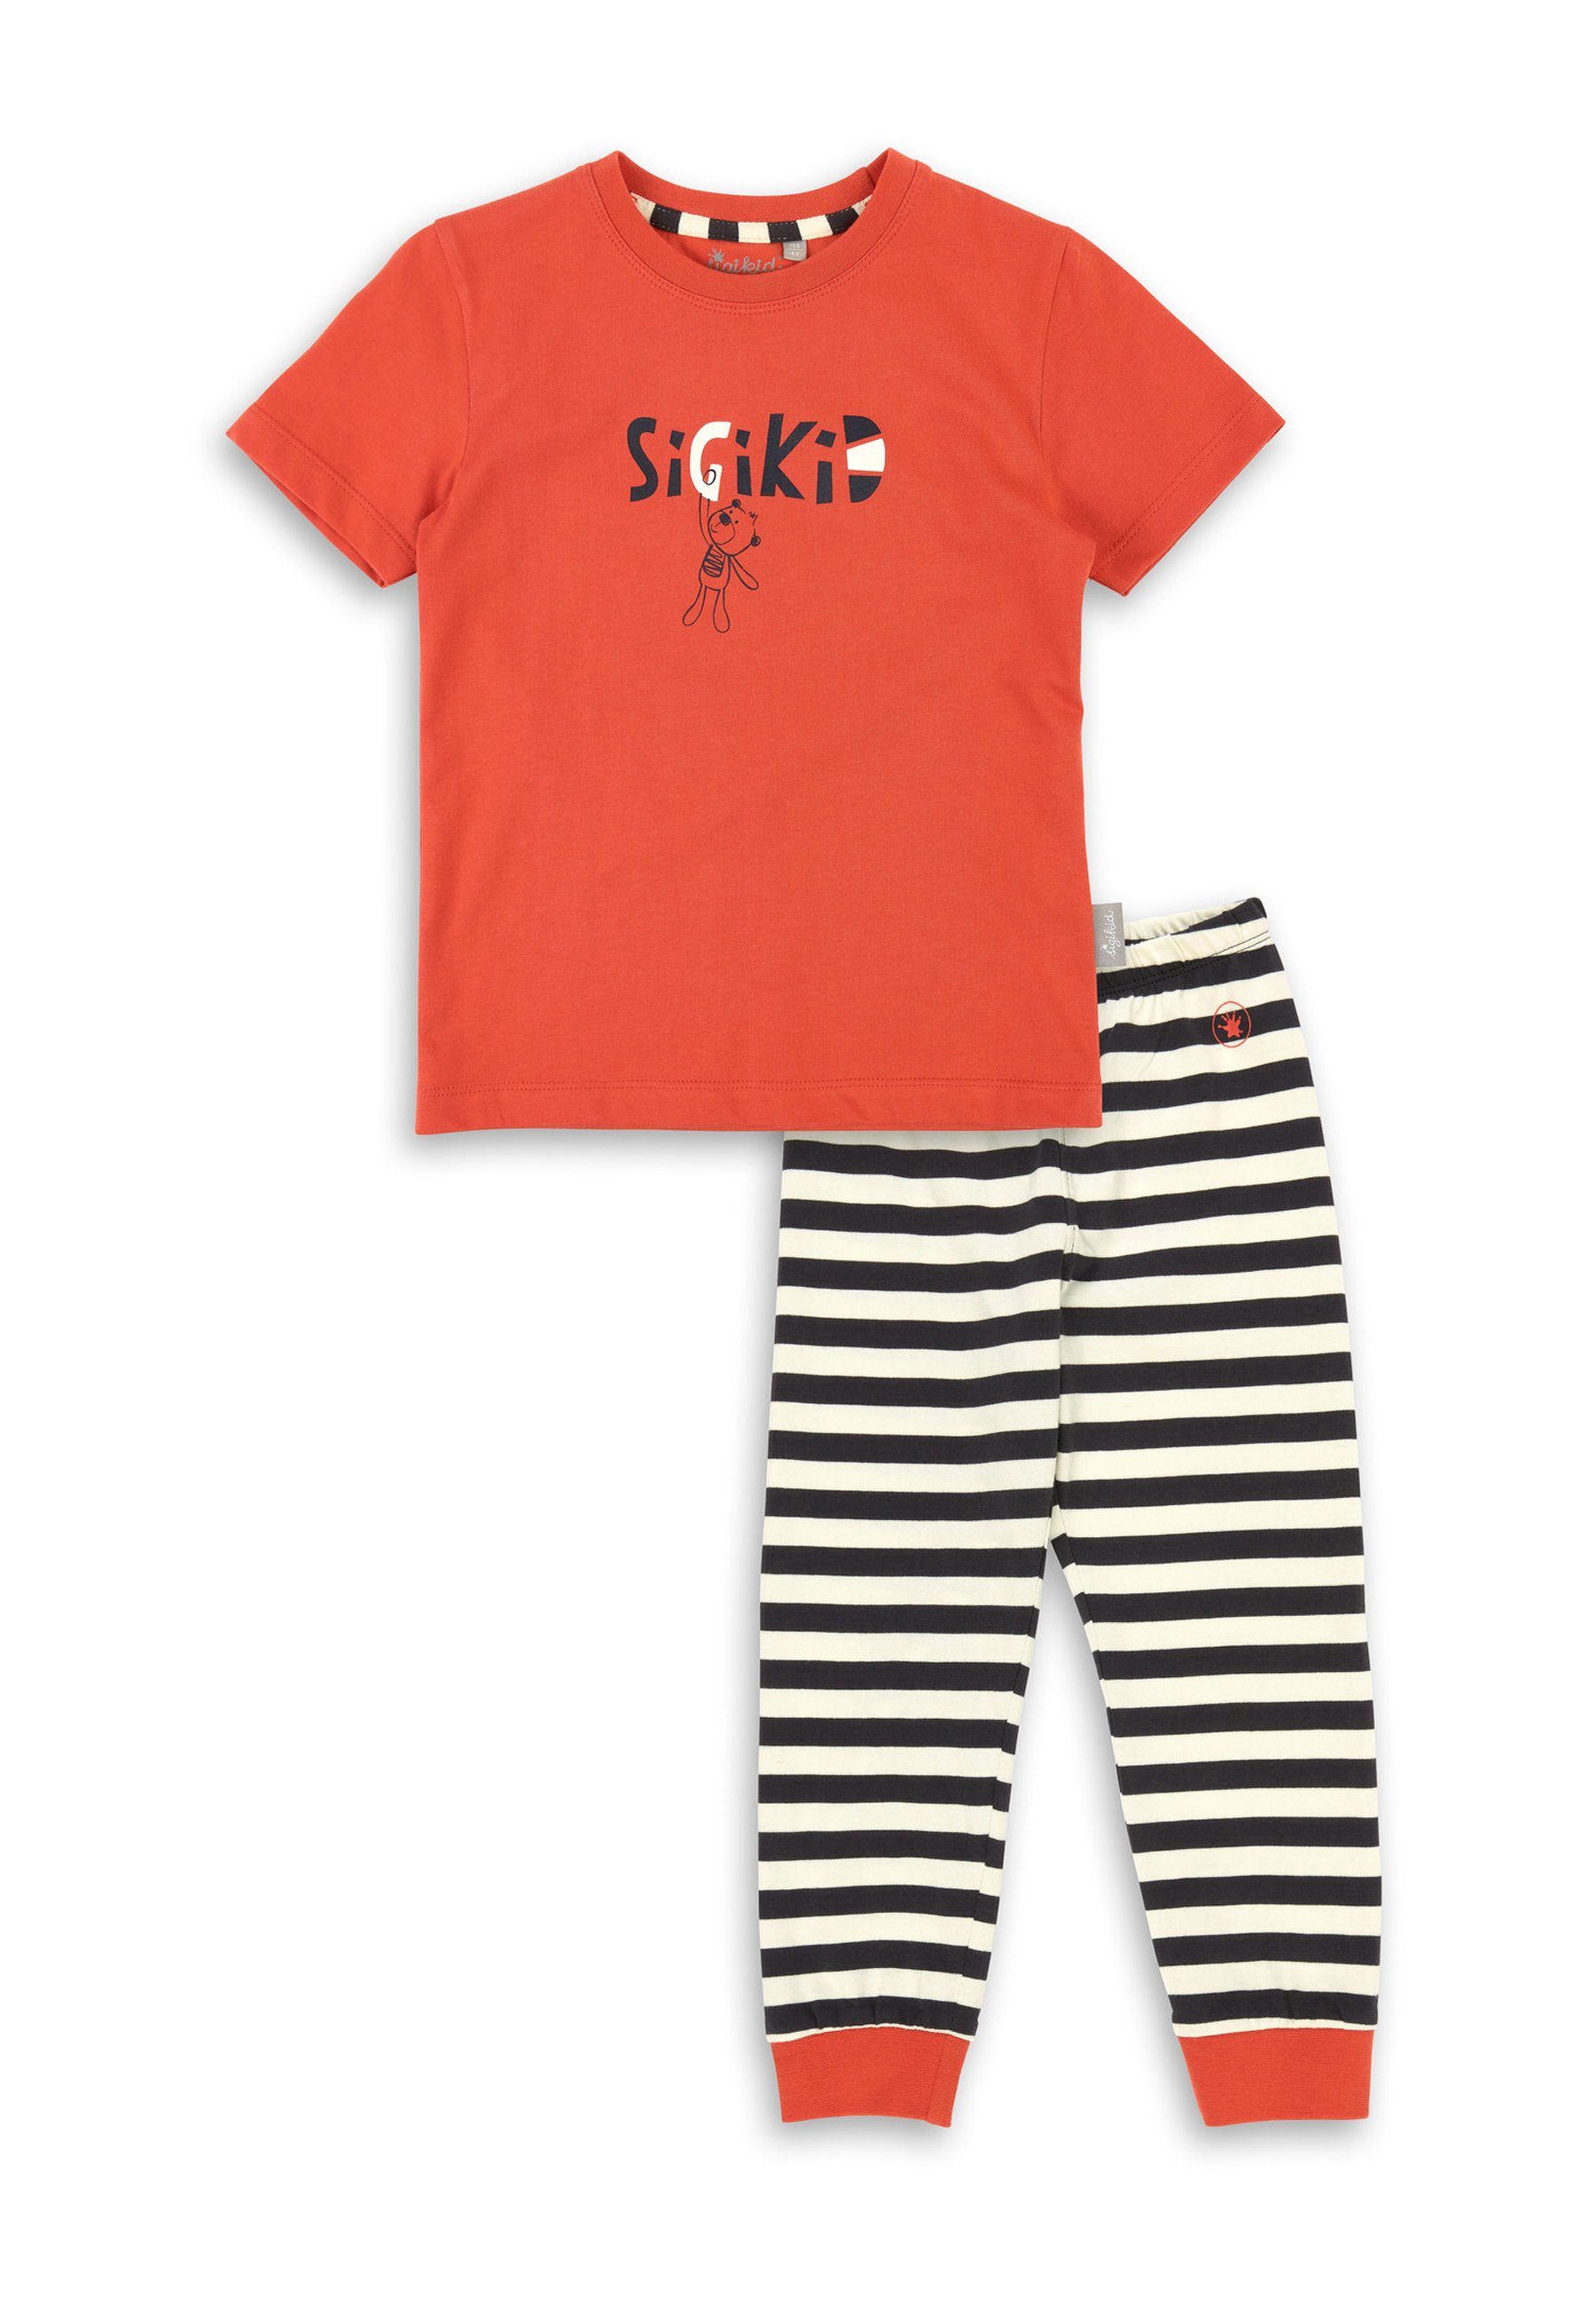 Sigikid Pyjama Kinder Nachtwäsche Pyjama (2 tlg) rot/schwarz/weiß